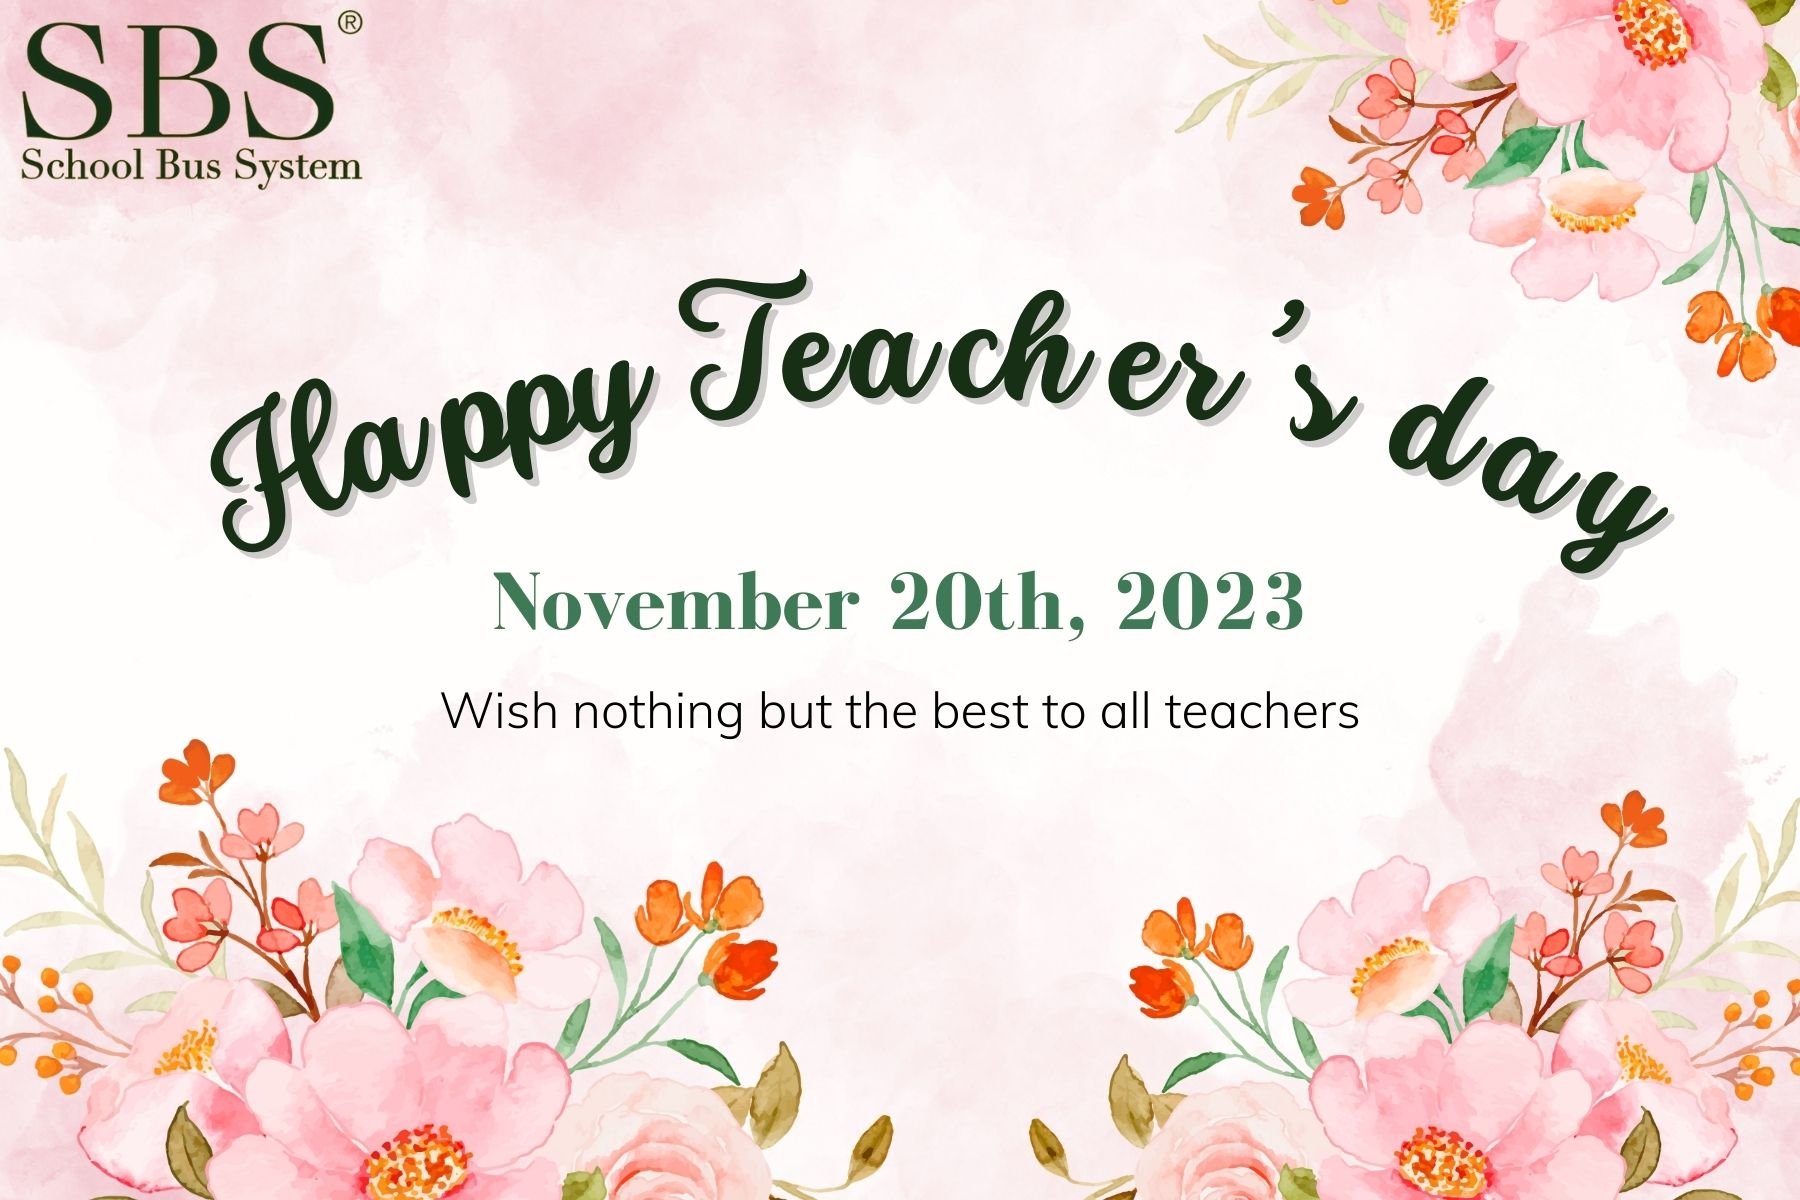 A Special Trip on Vietnam Teacher’s Day, November 20th, 2023